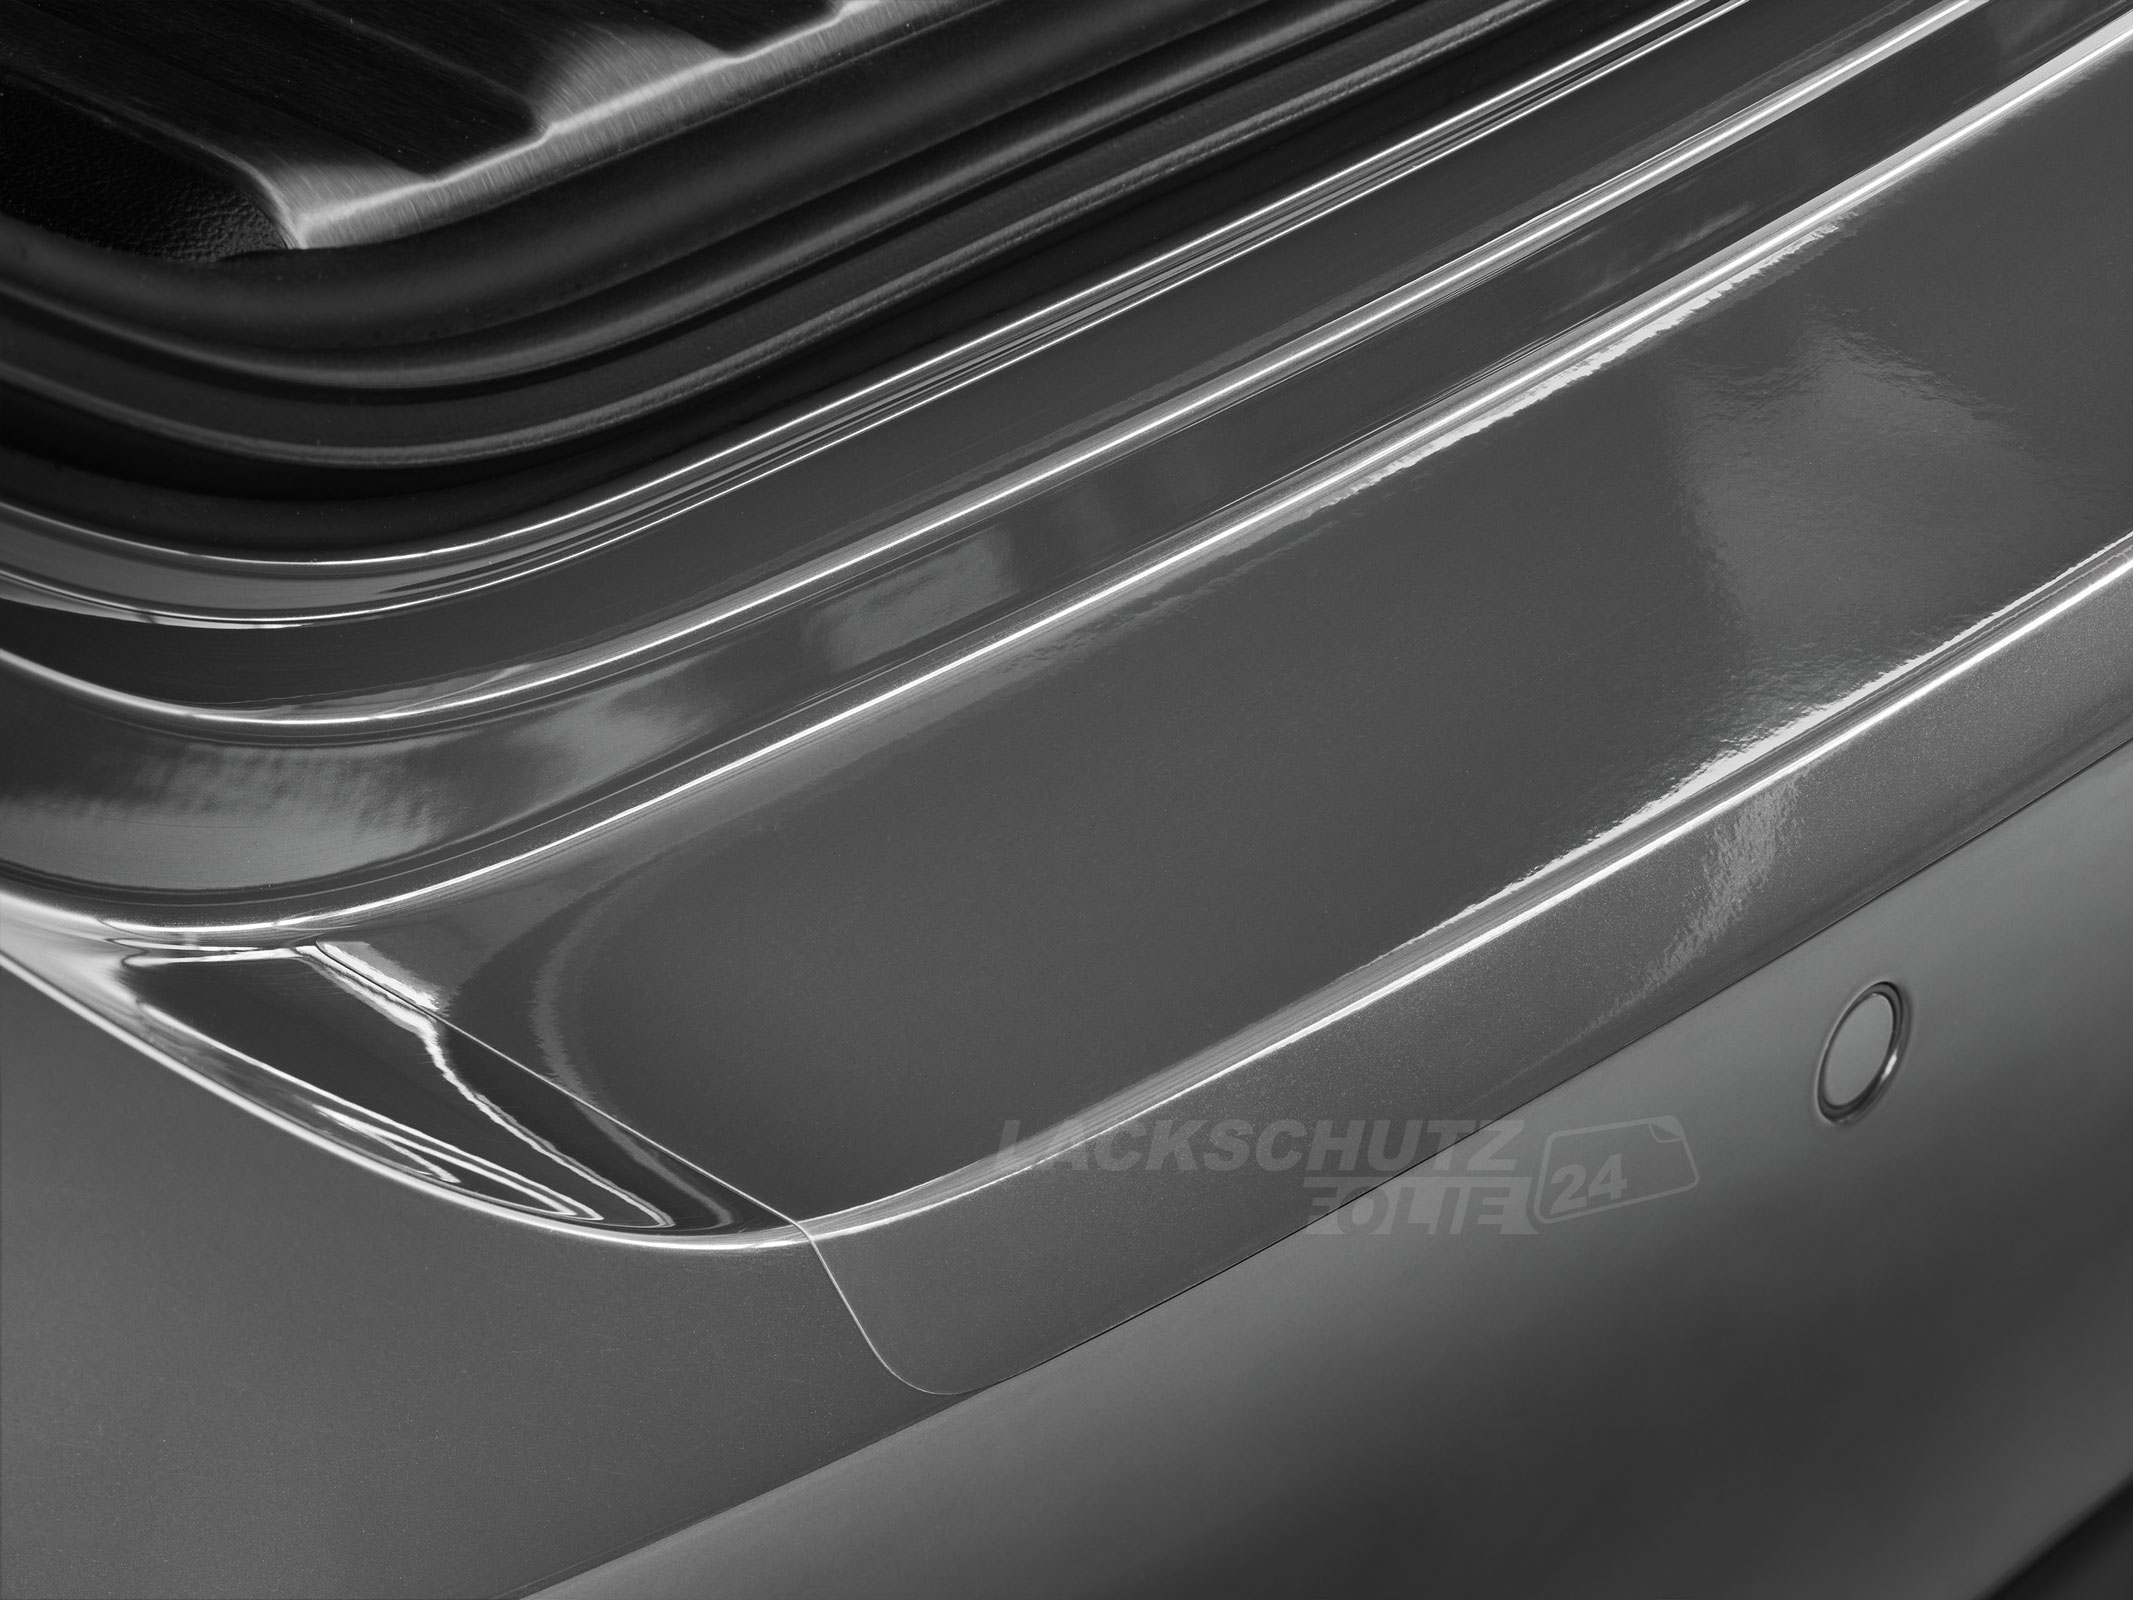 Ladekantenschutzfolie - Transparent Glatt Hochglänzend 240 µm stark für Mercedes-Benz Vito Typ W447, ab BJ 10/2014